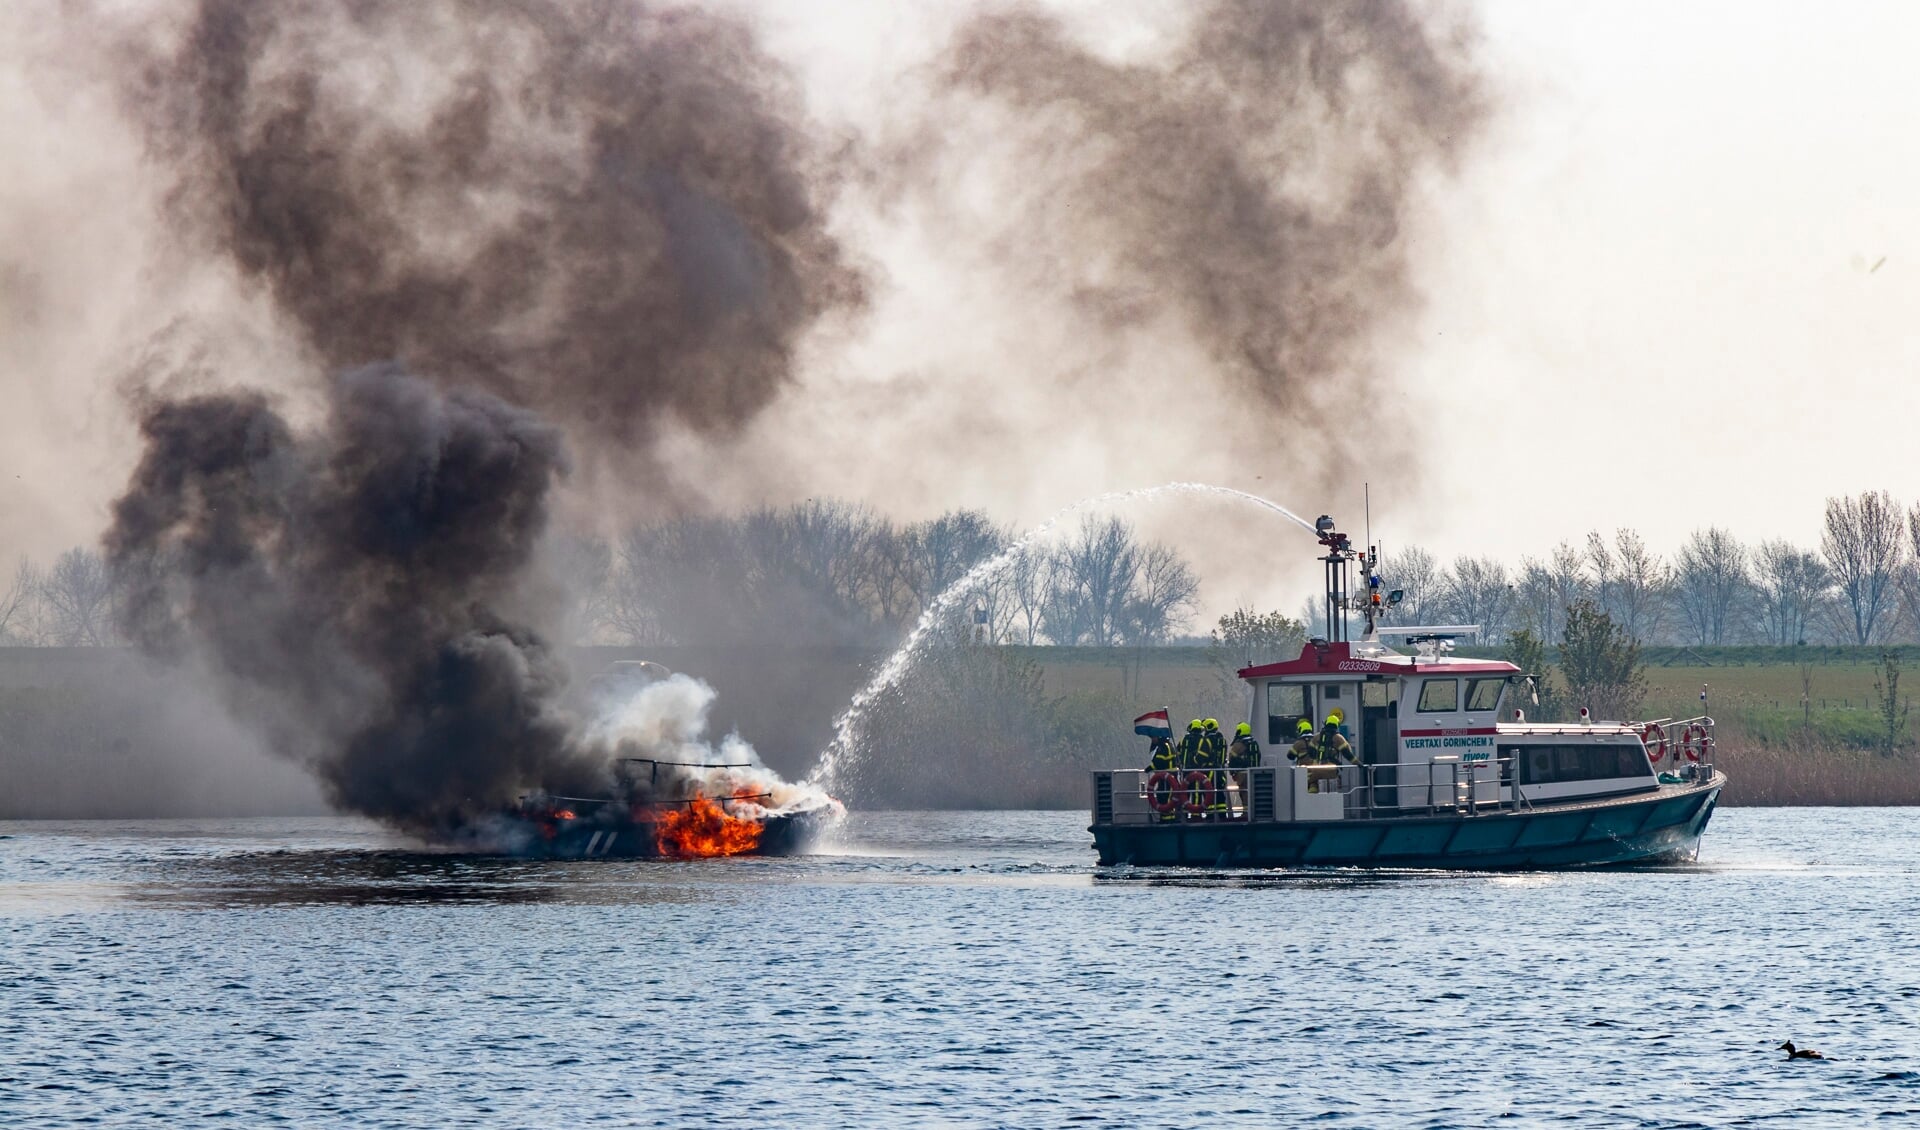 De brandweer van Gorinchem heeft in samenwerking met de veerdienst de boot geblust.